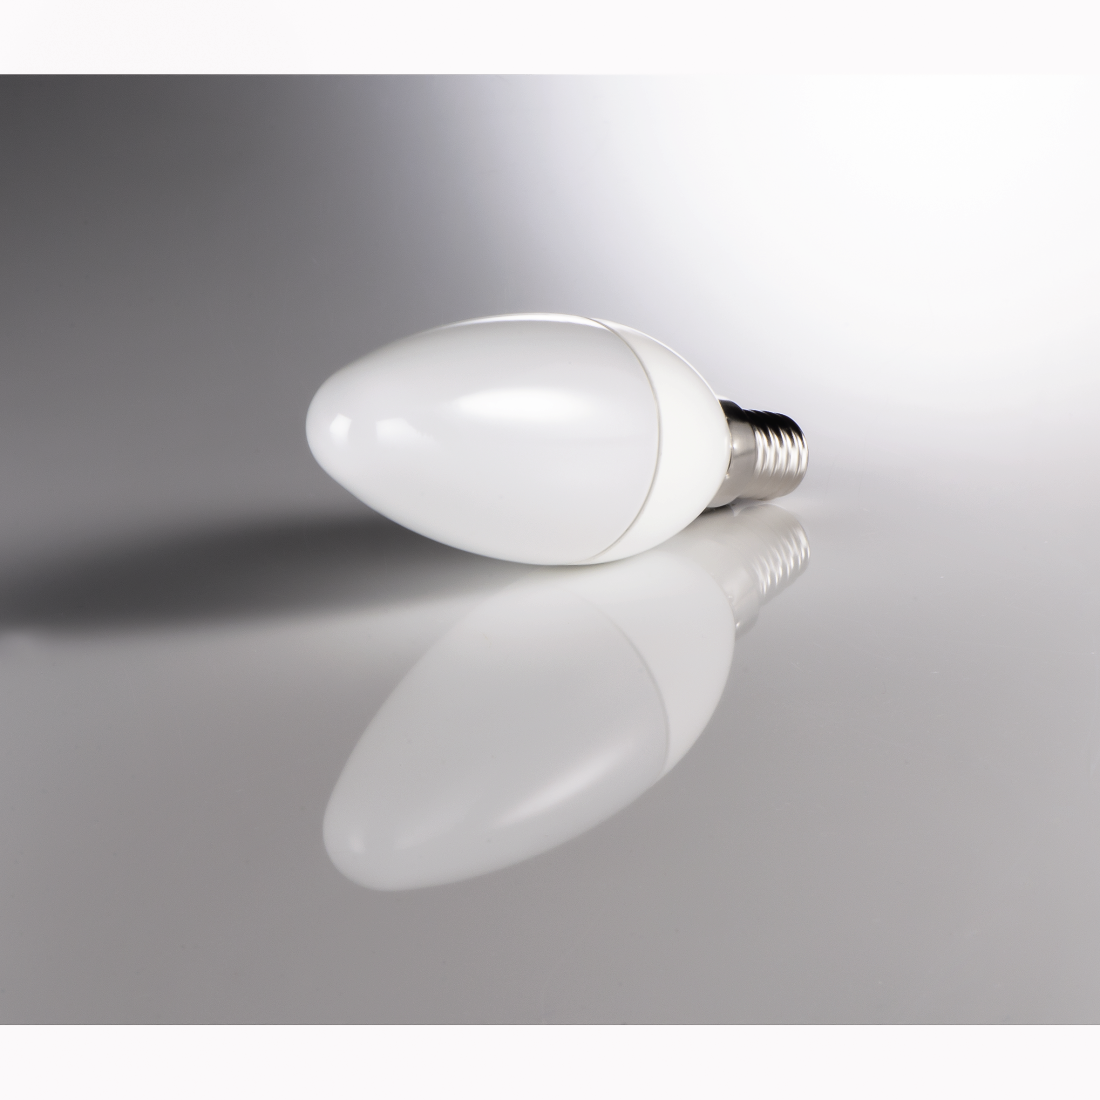 abx3 High-Res Image 3 - Xavax, Ampoule LED, E14, 350lm rempl. ampoule bougie 32W, blanc chaud